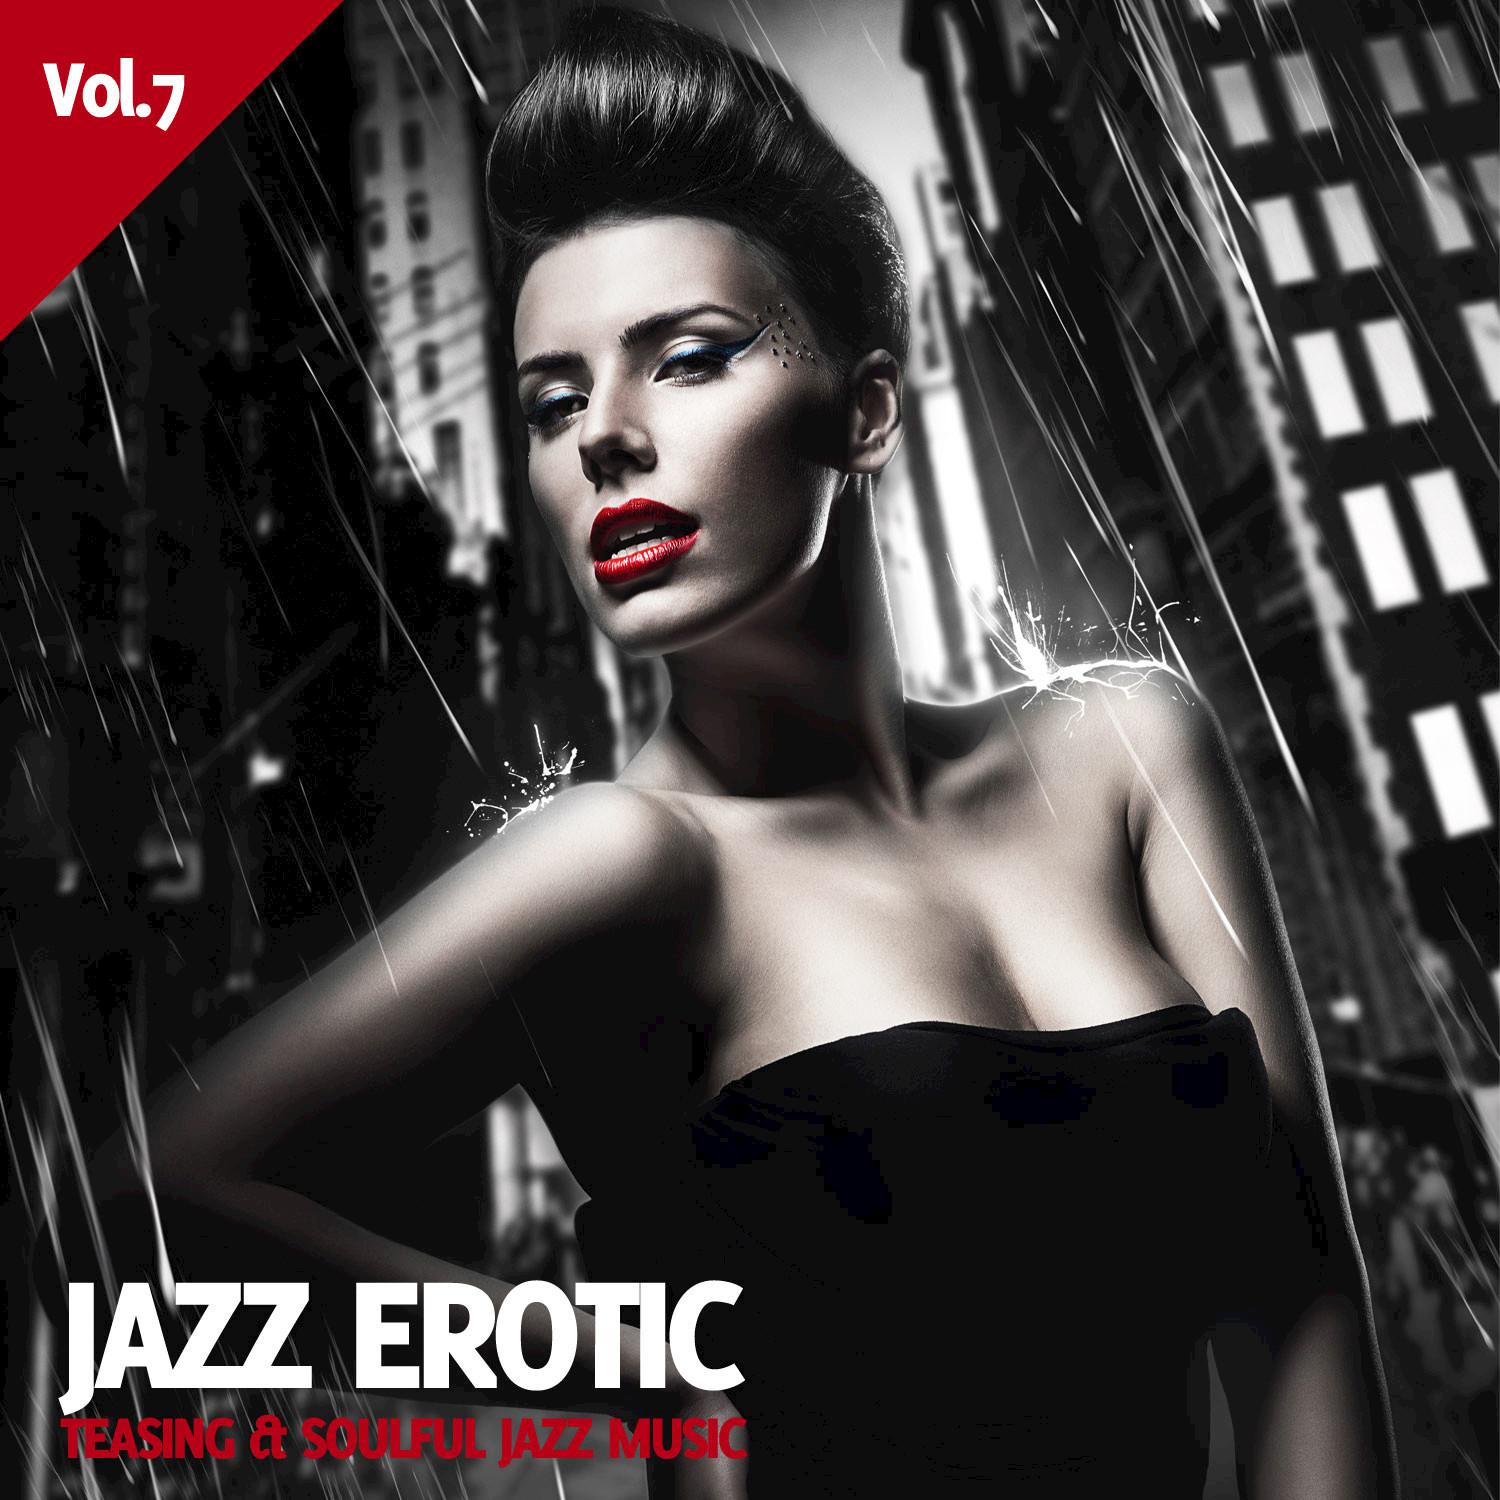 Jazz Erotic Vol. 7